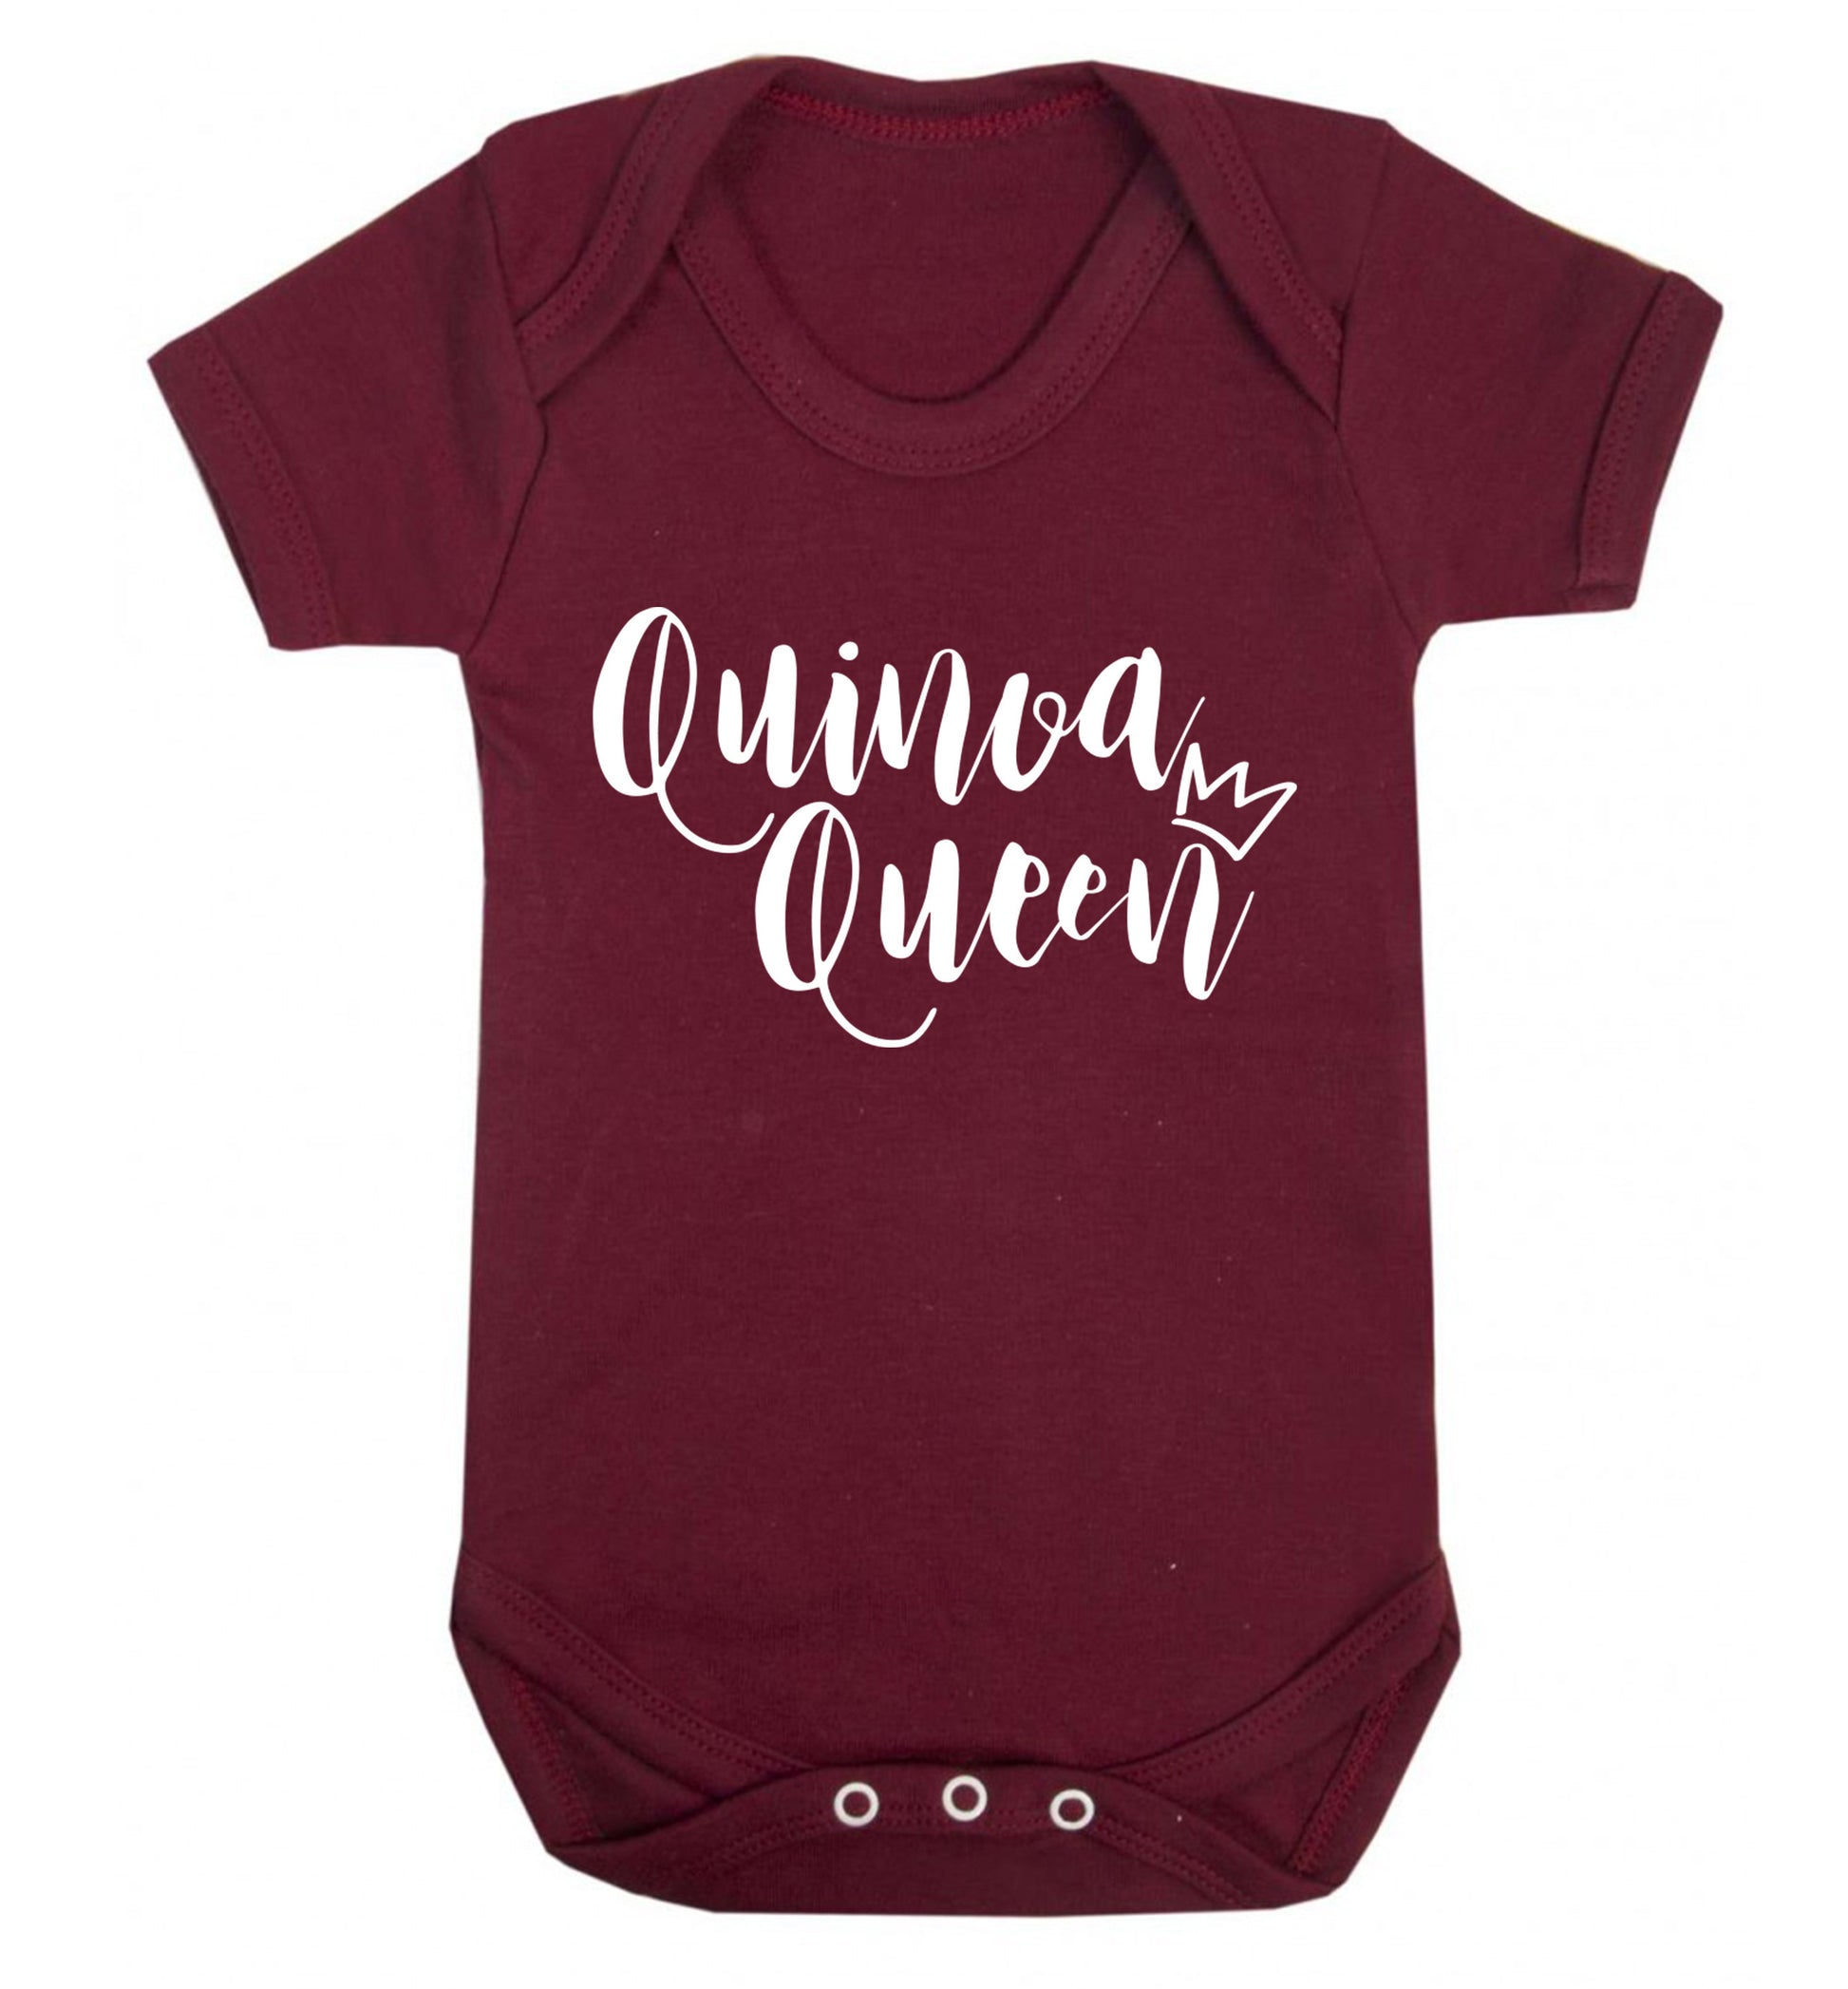 Quinoa Queen Baby Vest maroon 18-24 months